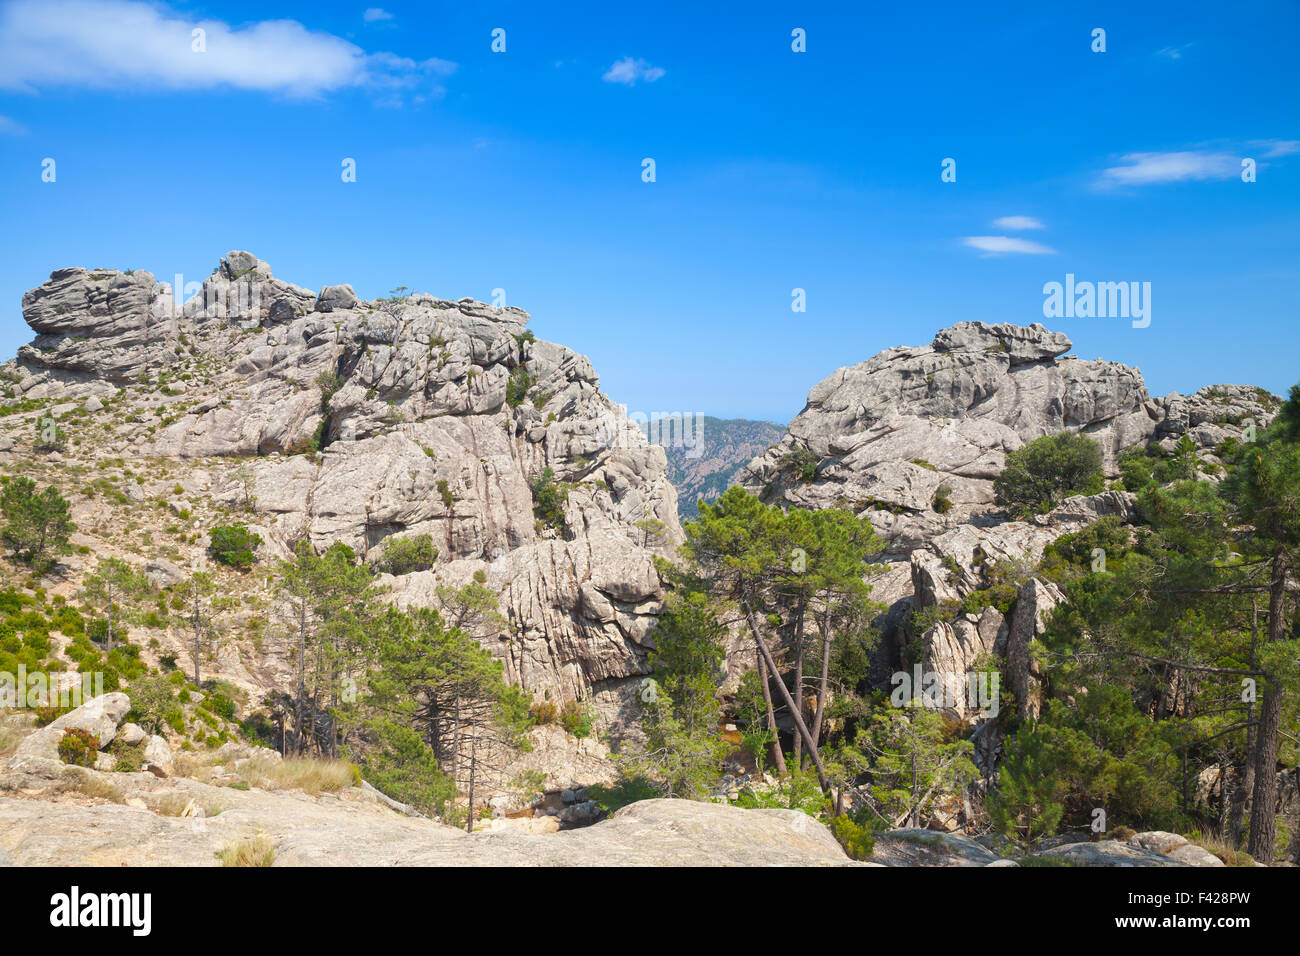 Montagne sauvage avec des roches sous ciel bleu. Au sud de la Corse, France Banque D'Images